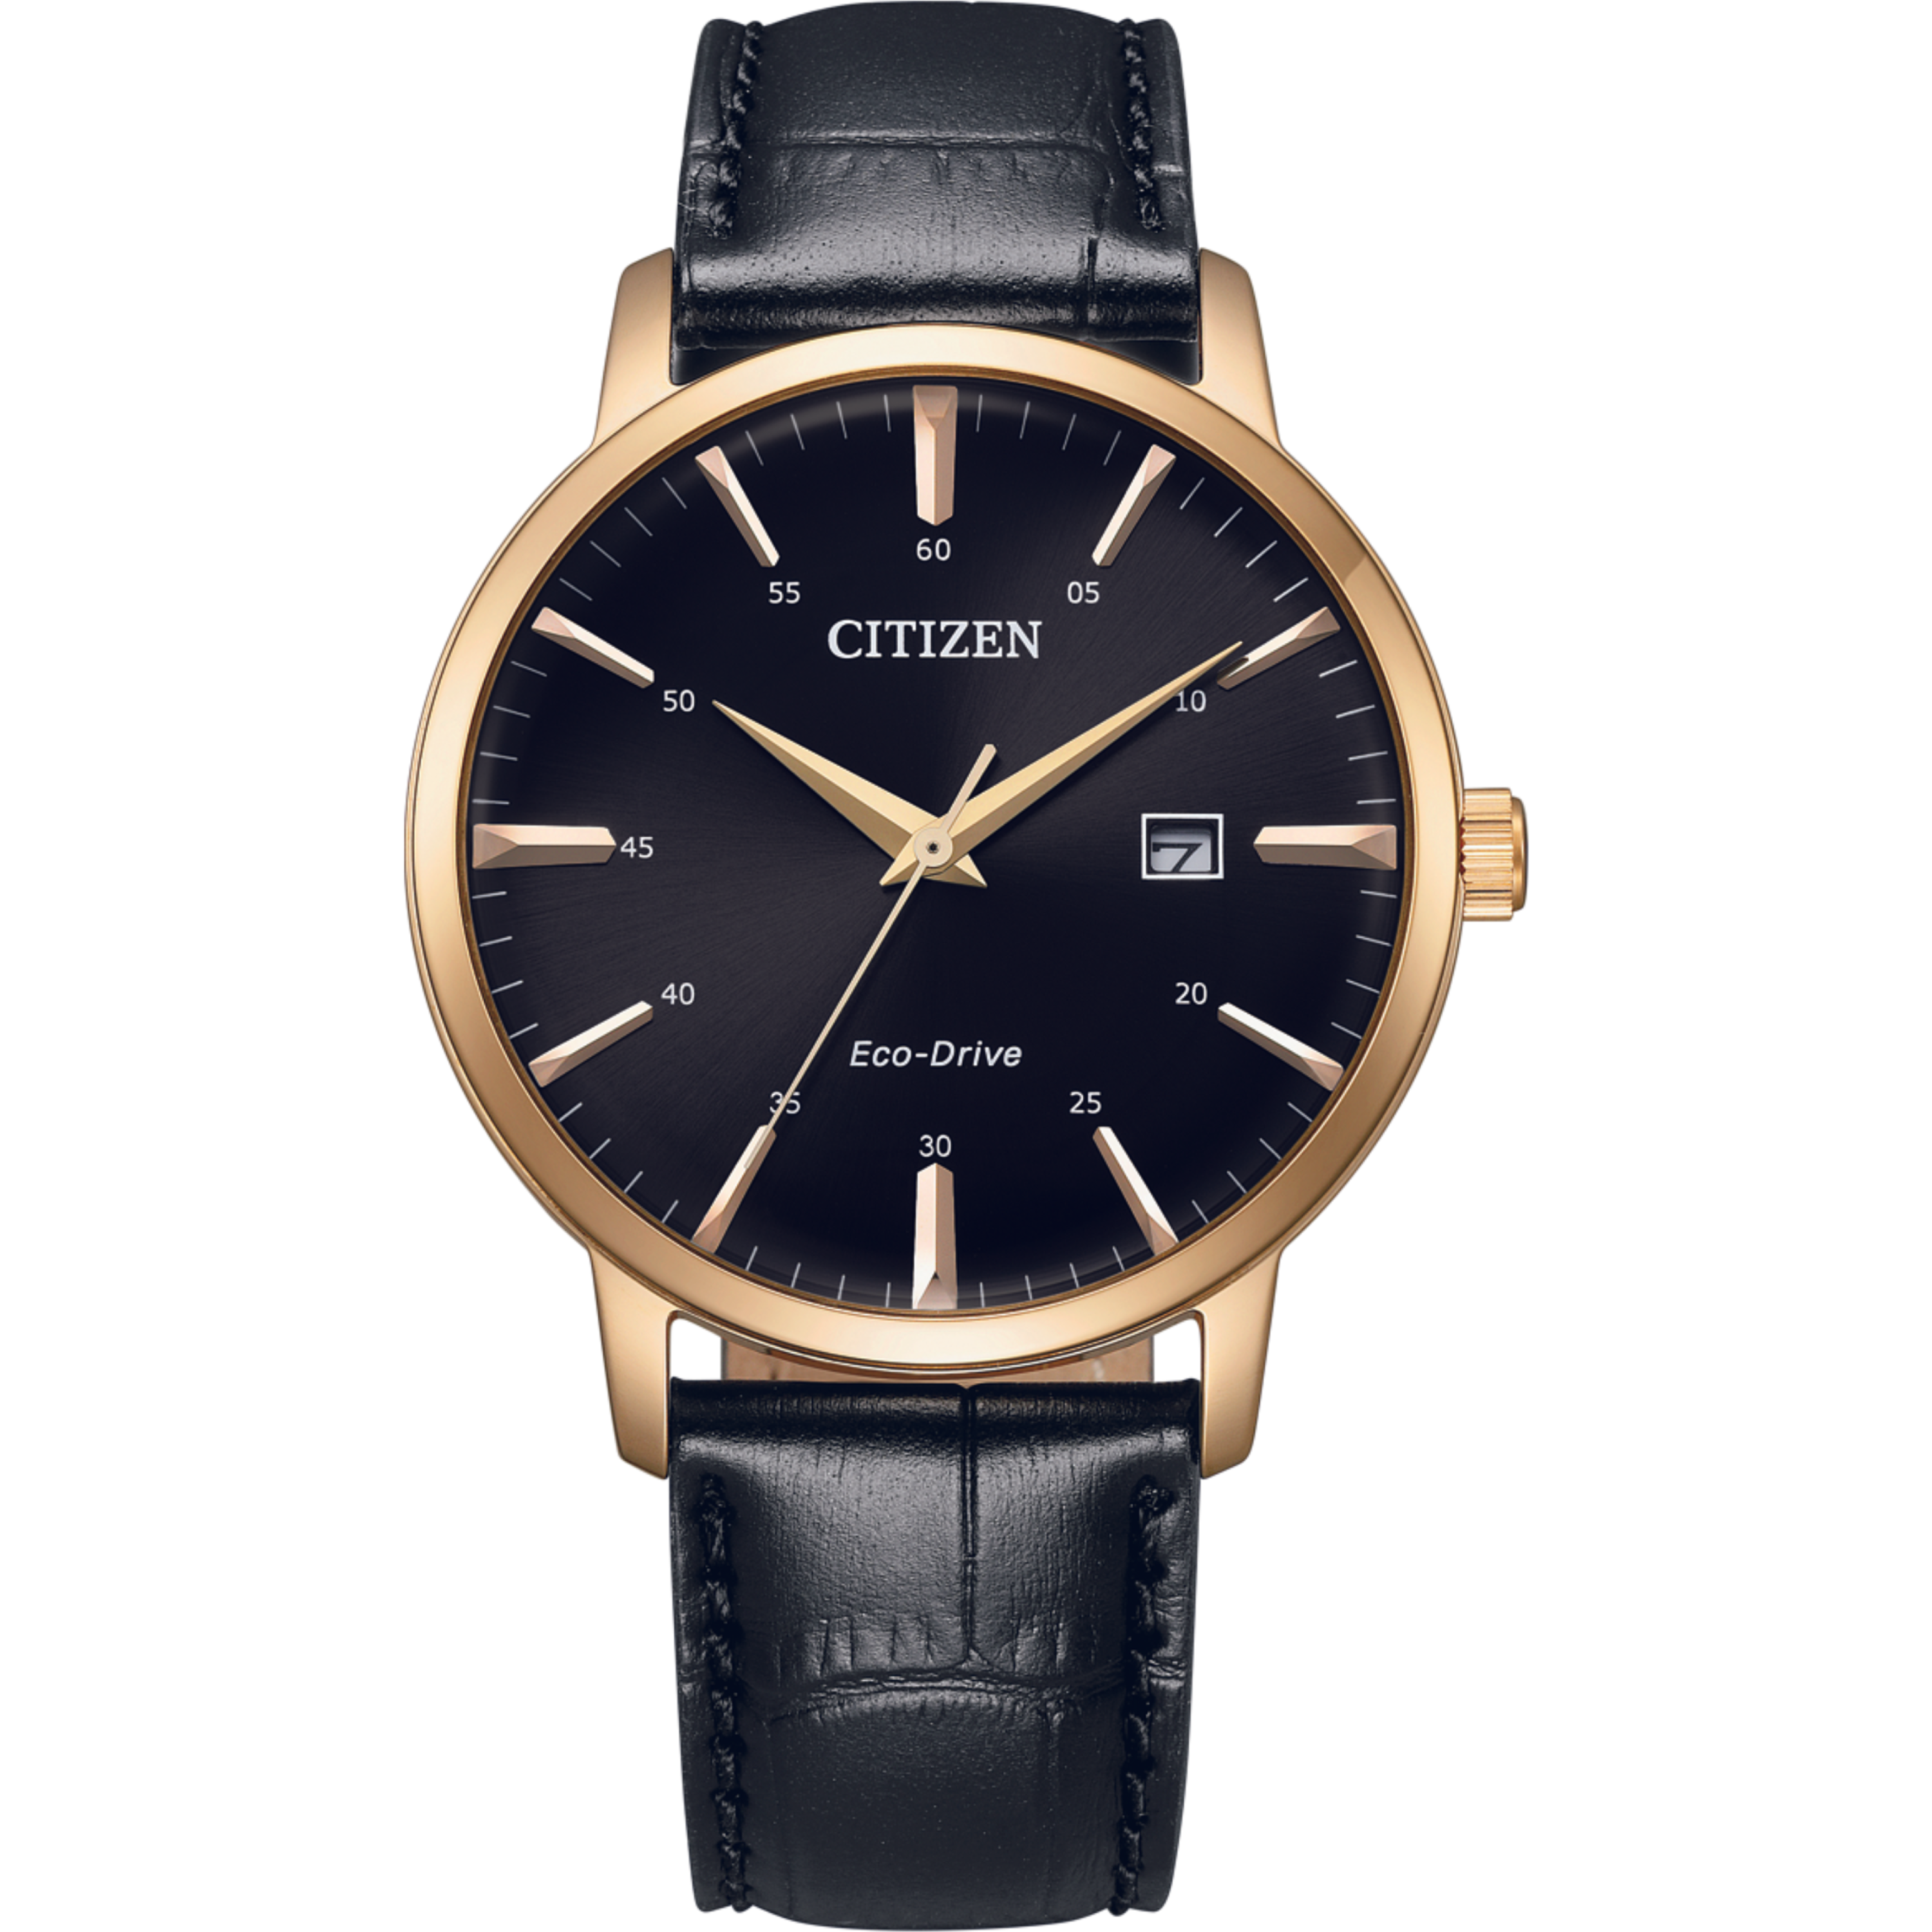 שעון יד לגבר מנגנון אקו דרייב Citizen BM7462-15E 40mm - צבע שחור אחריות לשנה ע"י היבואן